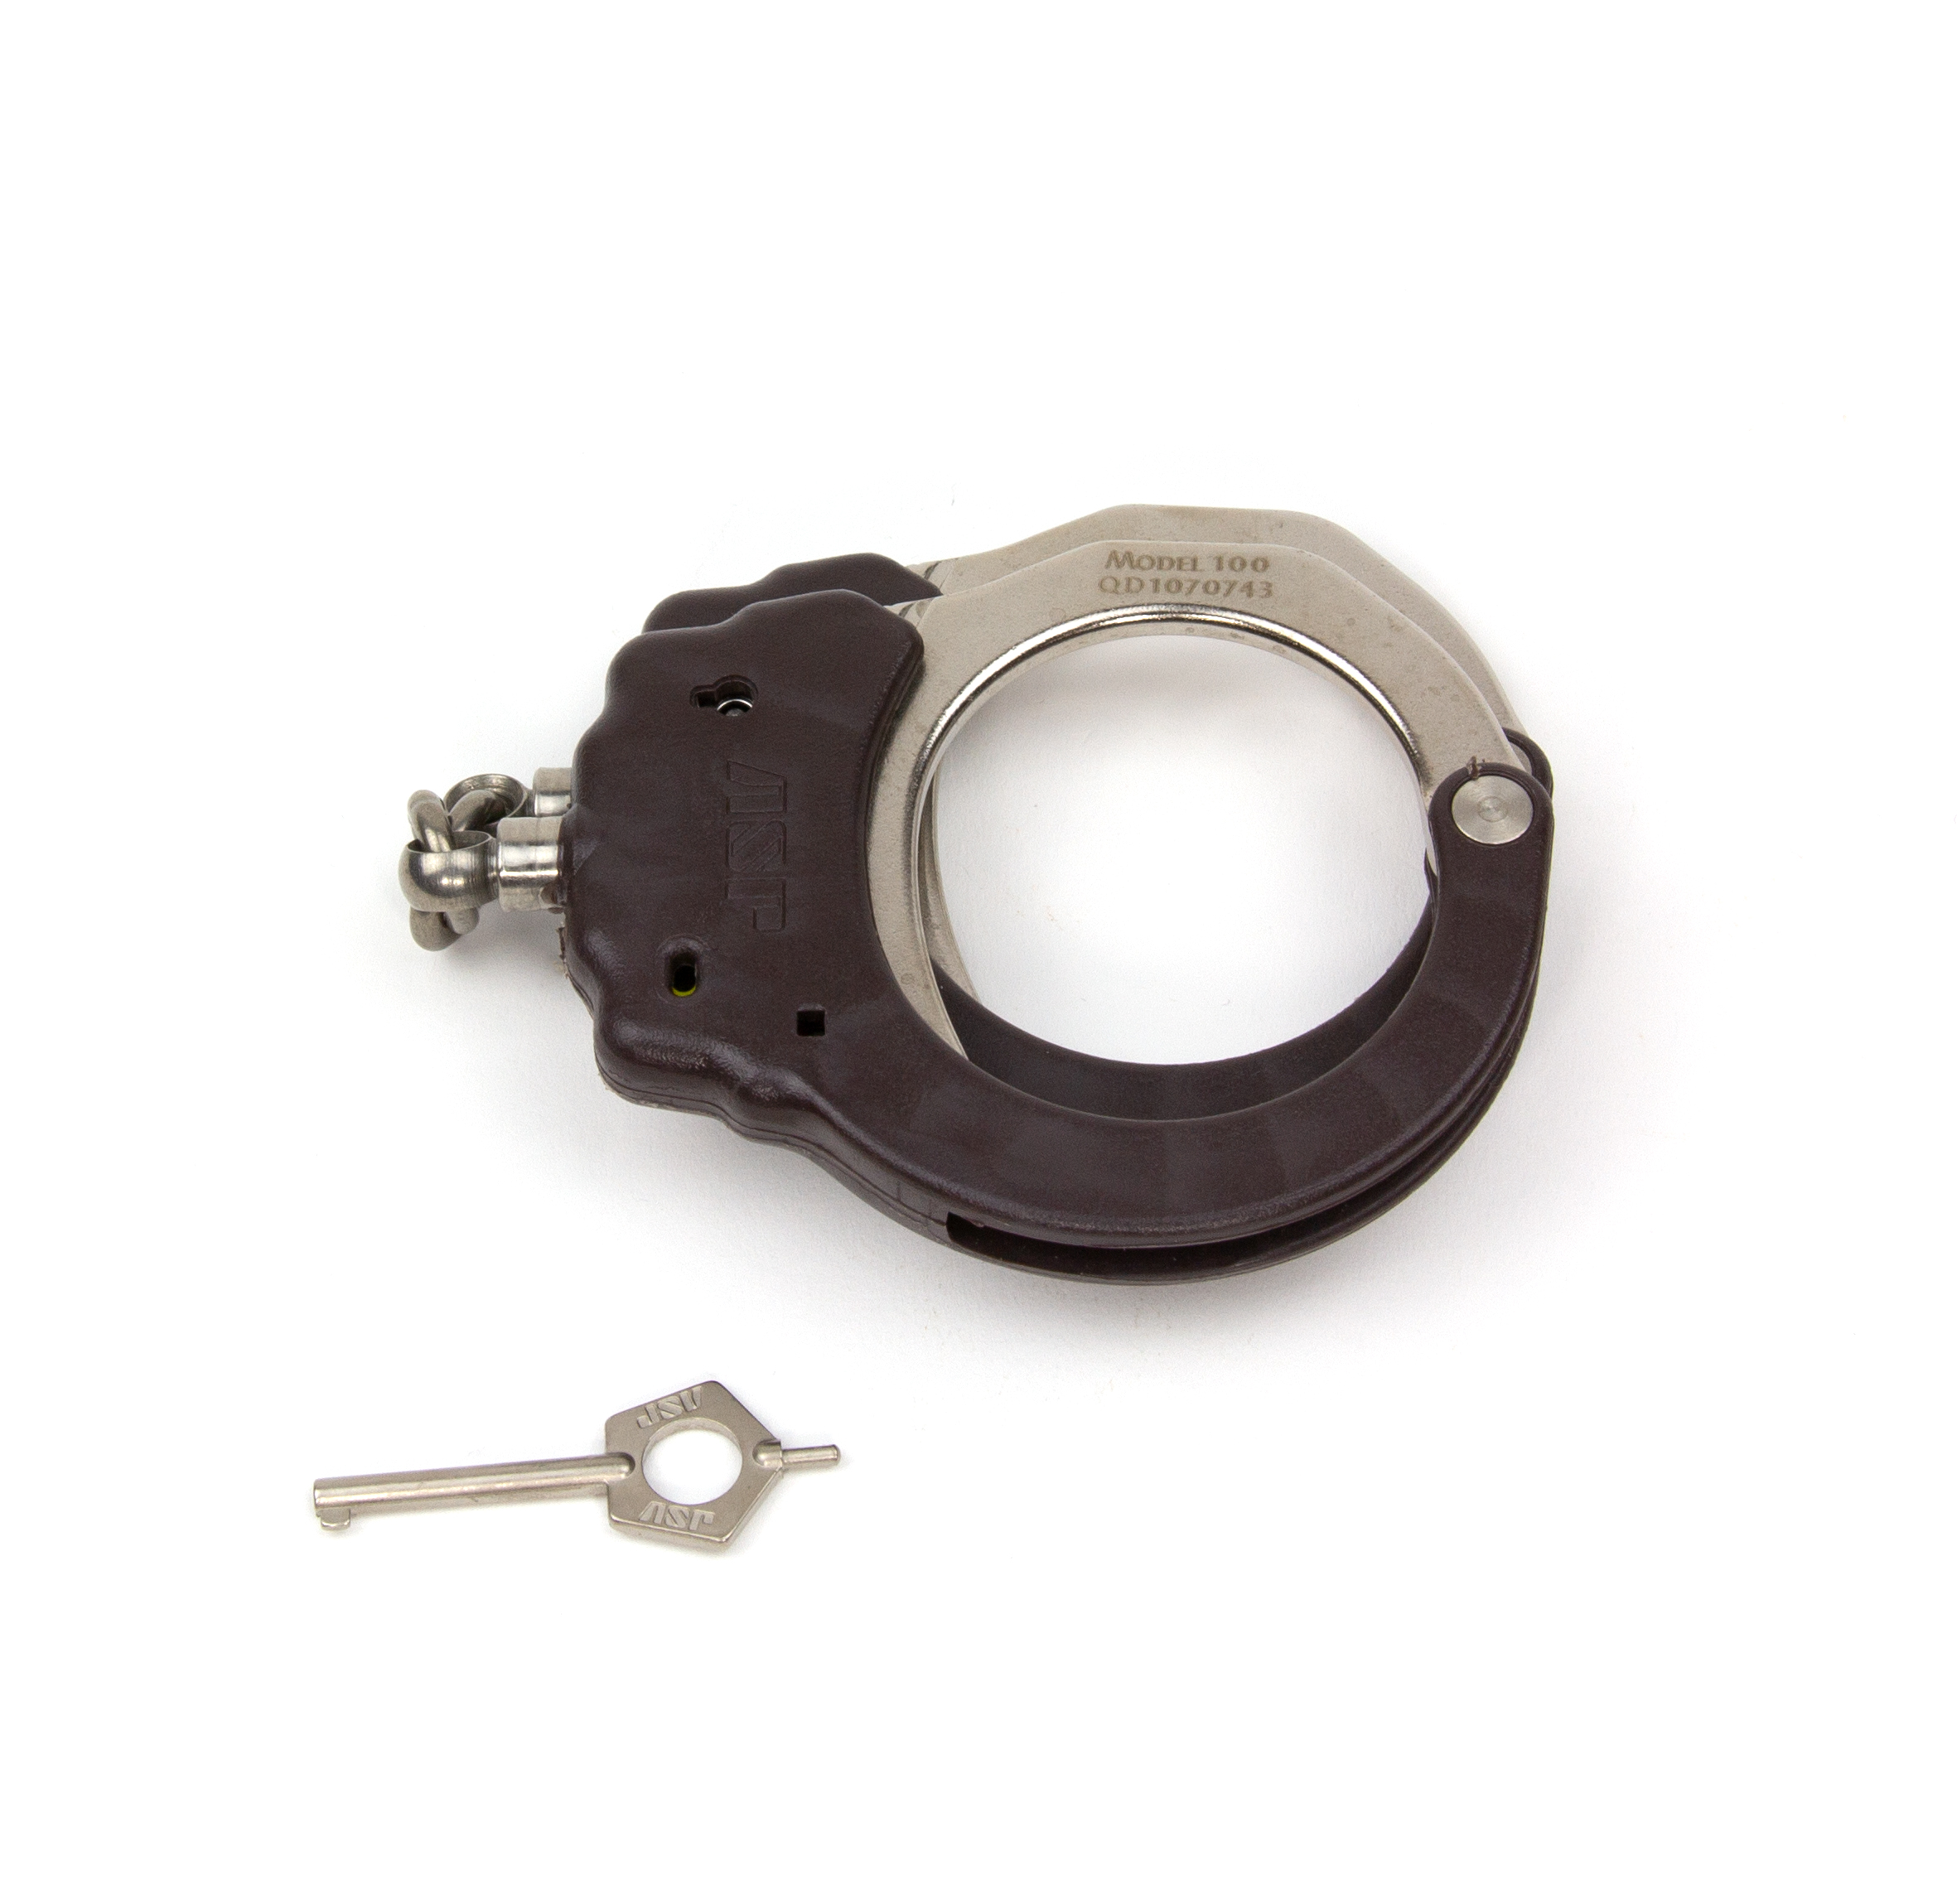 ASP Identifier Chain Flex Cuffs Brown - 56105 / Model 100 Braun